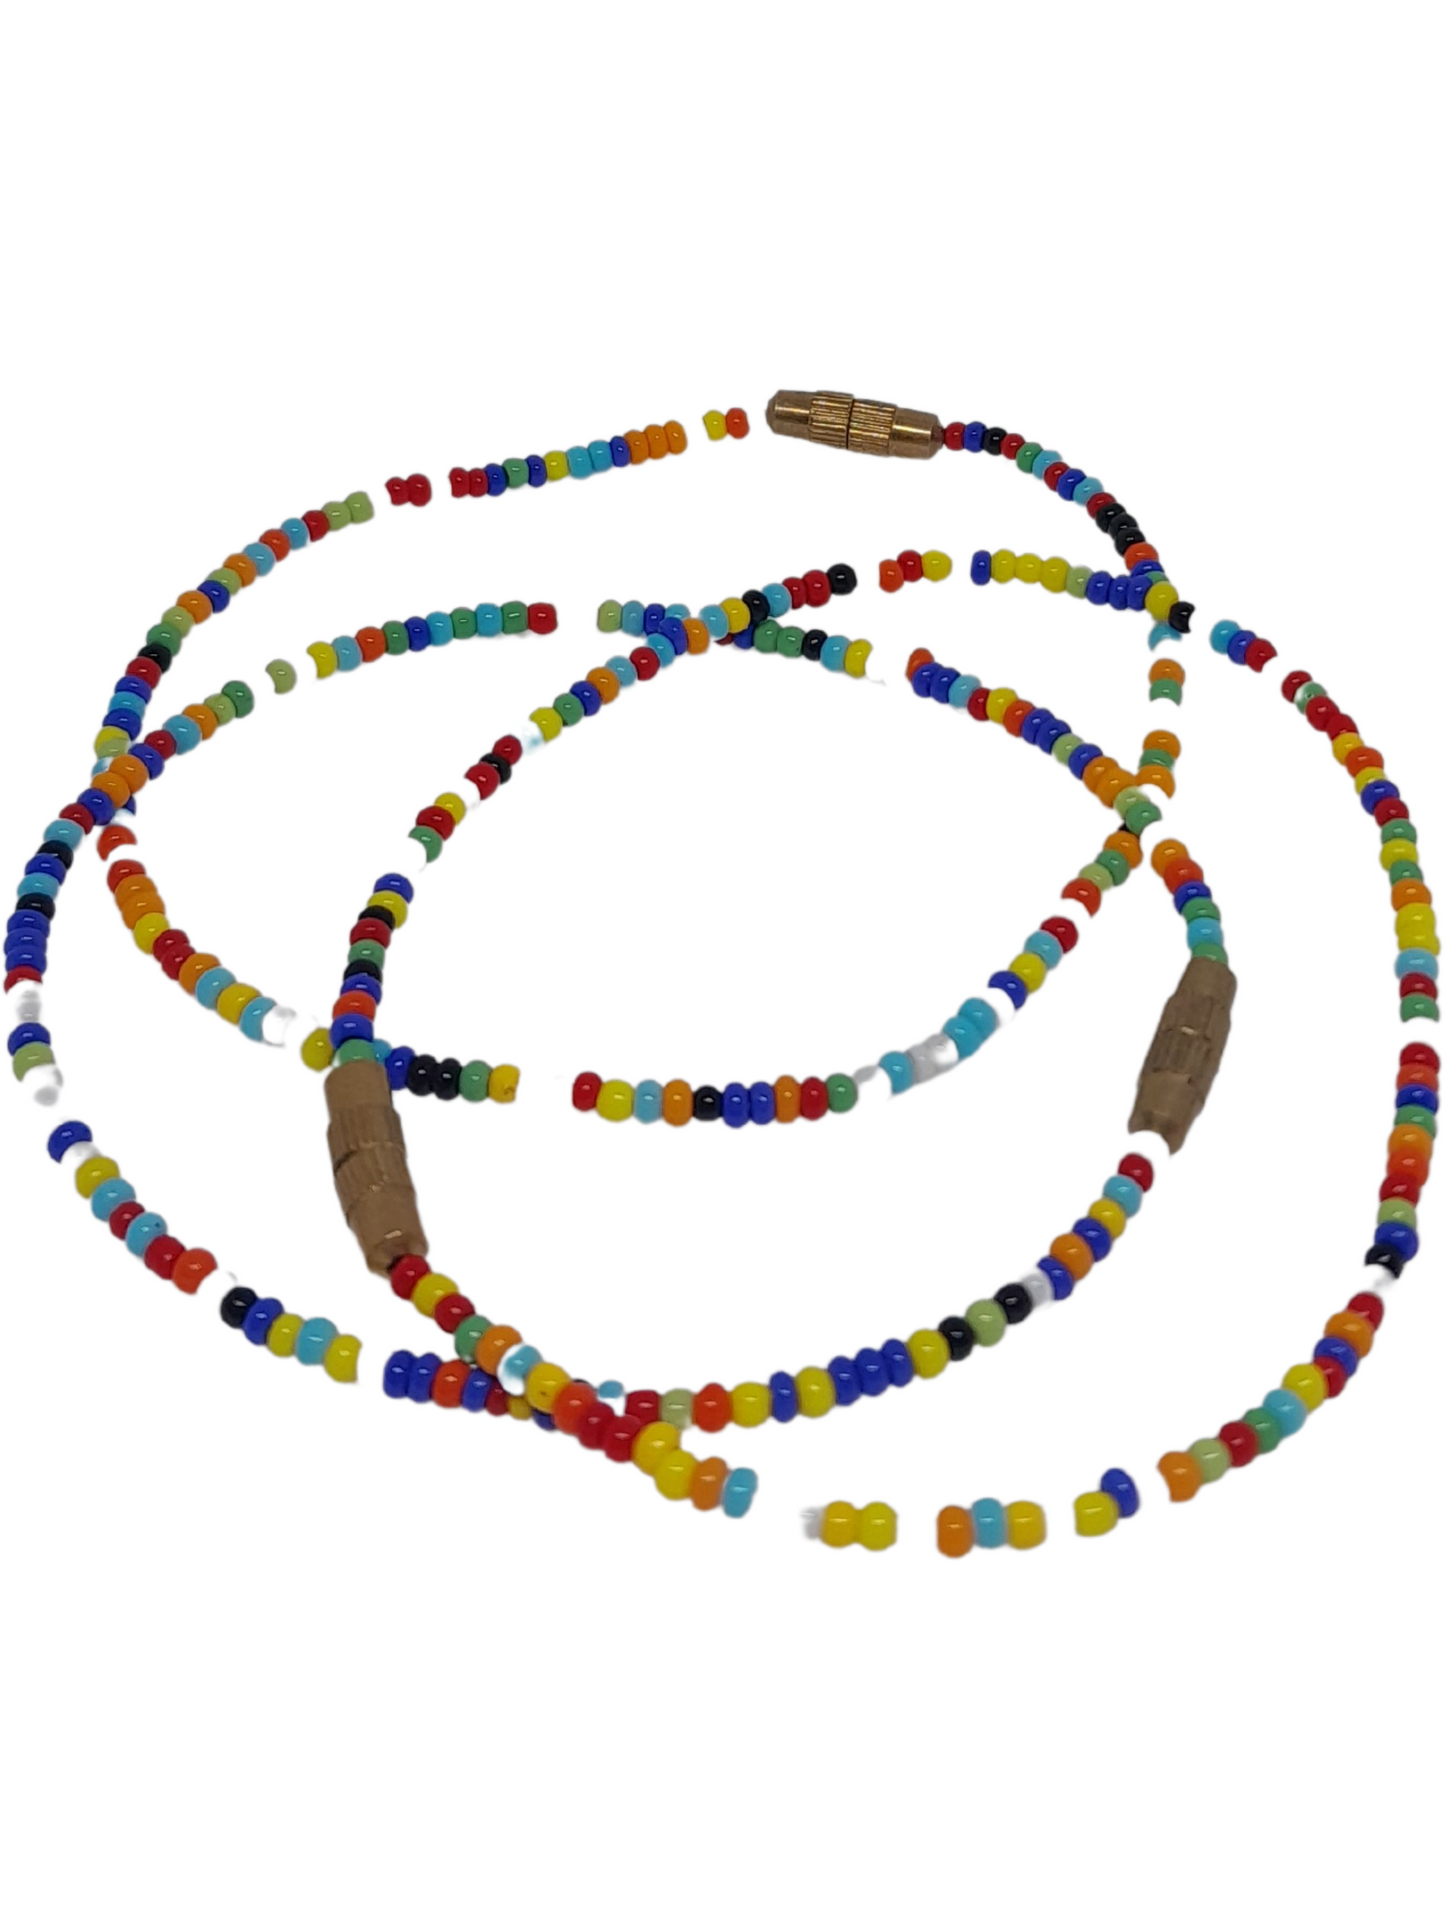 Beaded Wrap Bracelets Set, Bohemian Seed Beads Bracelets Handmade Colorful Bracelets Jewelry